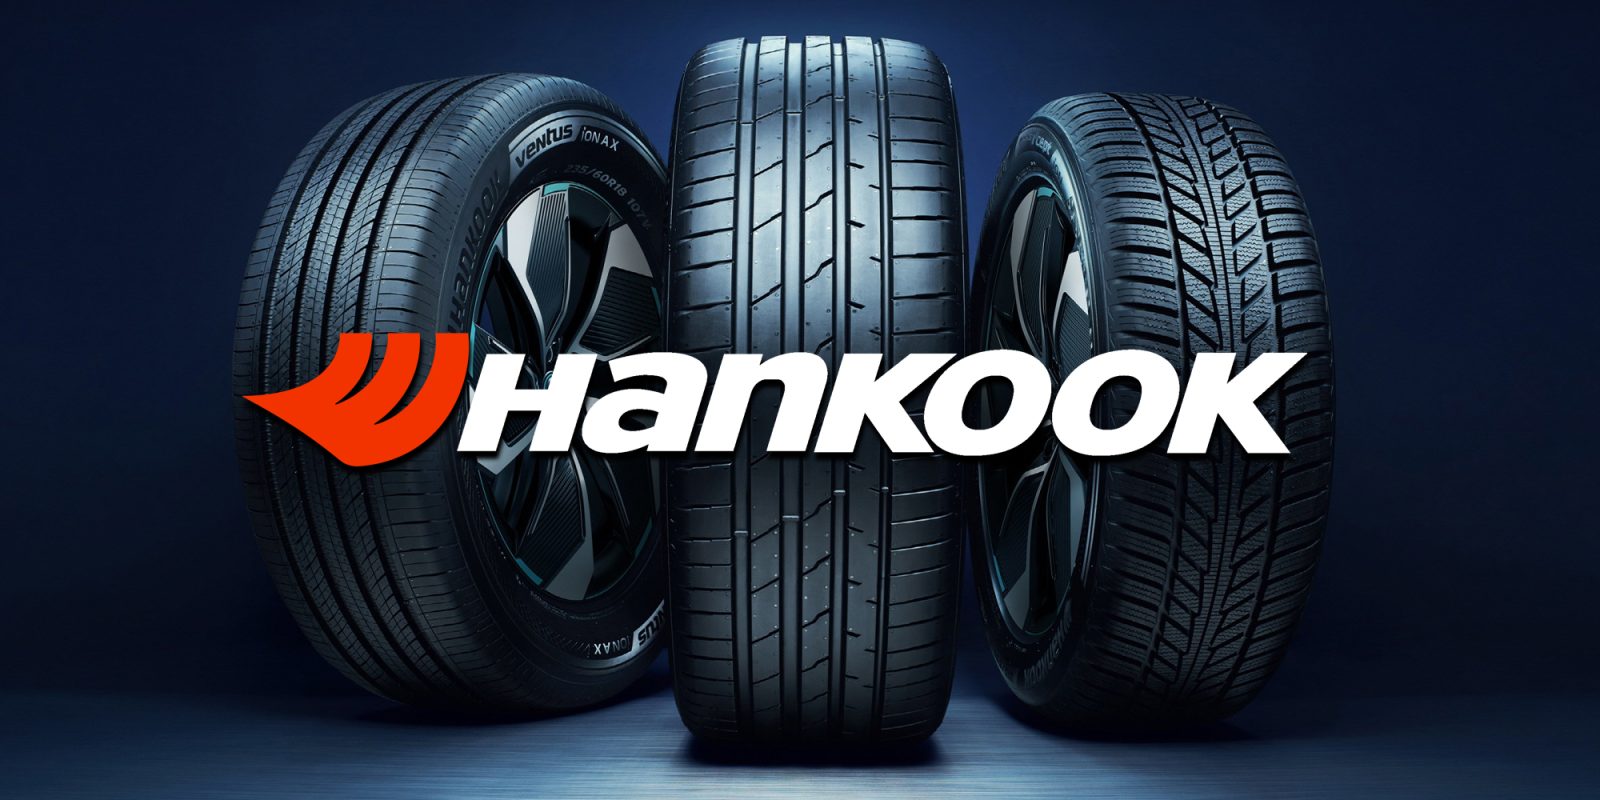 Hankook EV tires